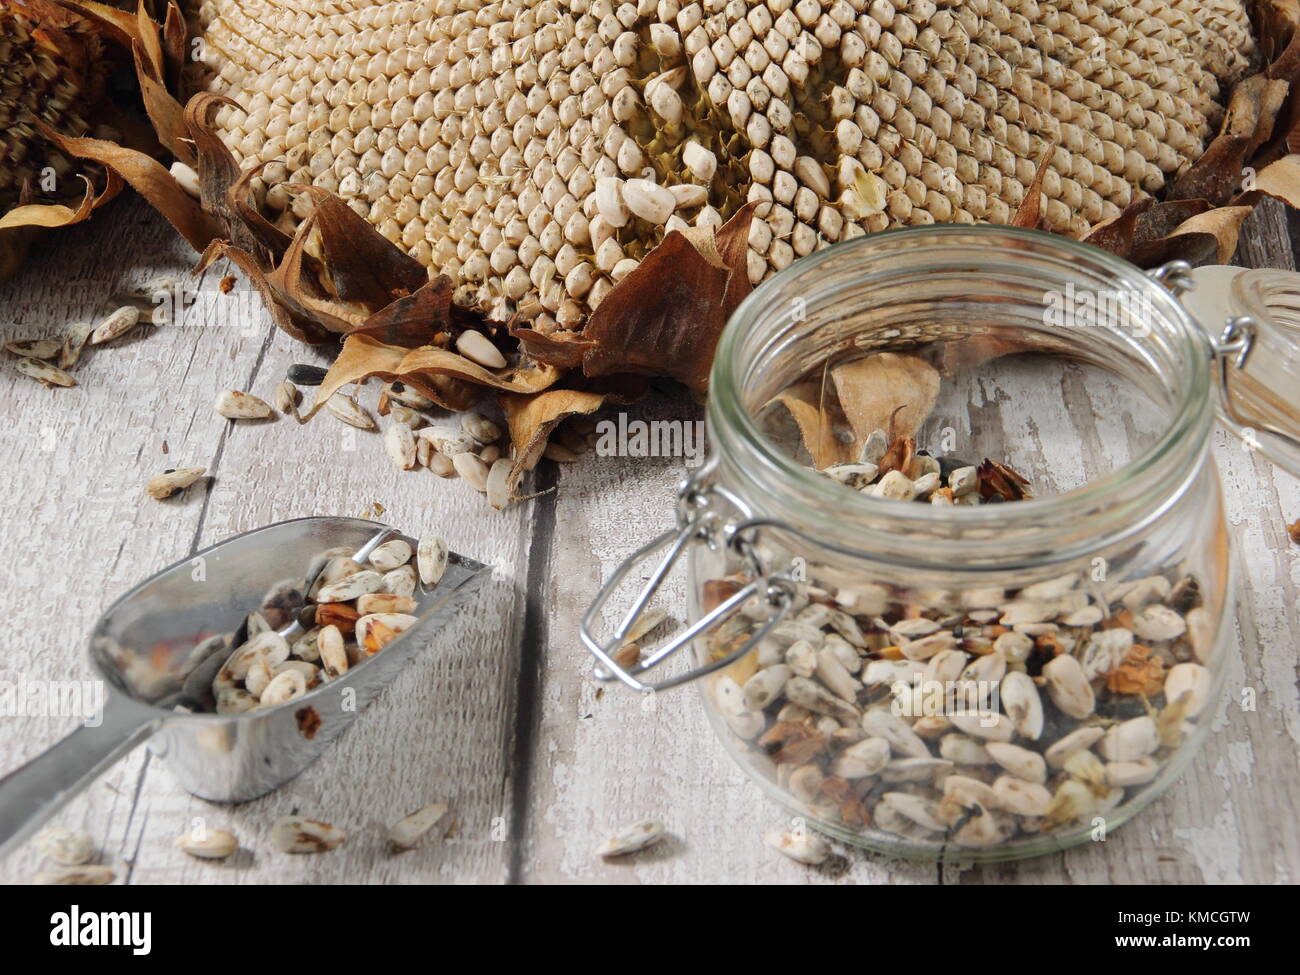 Les graines de tournesol sont récoltées à partir de la tête de l'Helianthus 'tournesol' géant russe, certains pour la replantation et certains pour des aliments pour oiseaux, UK Banque D'Images